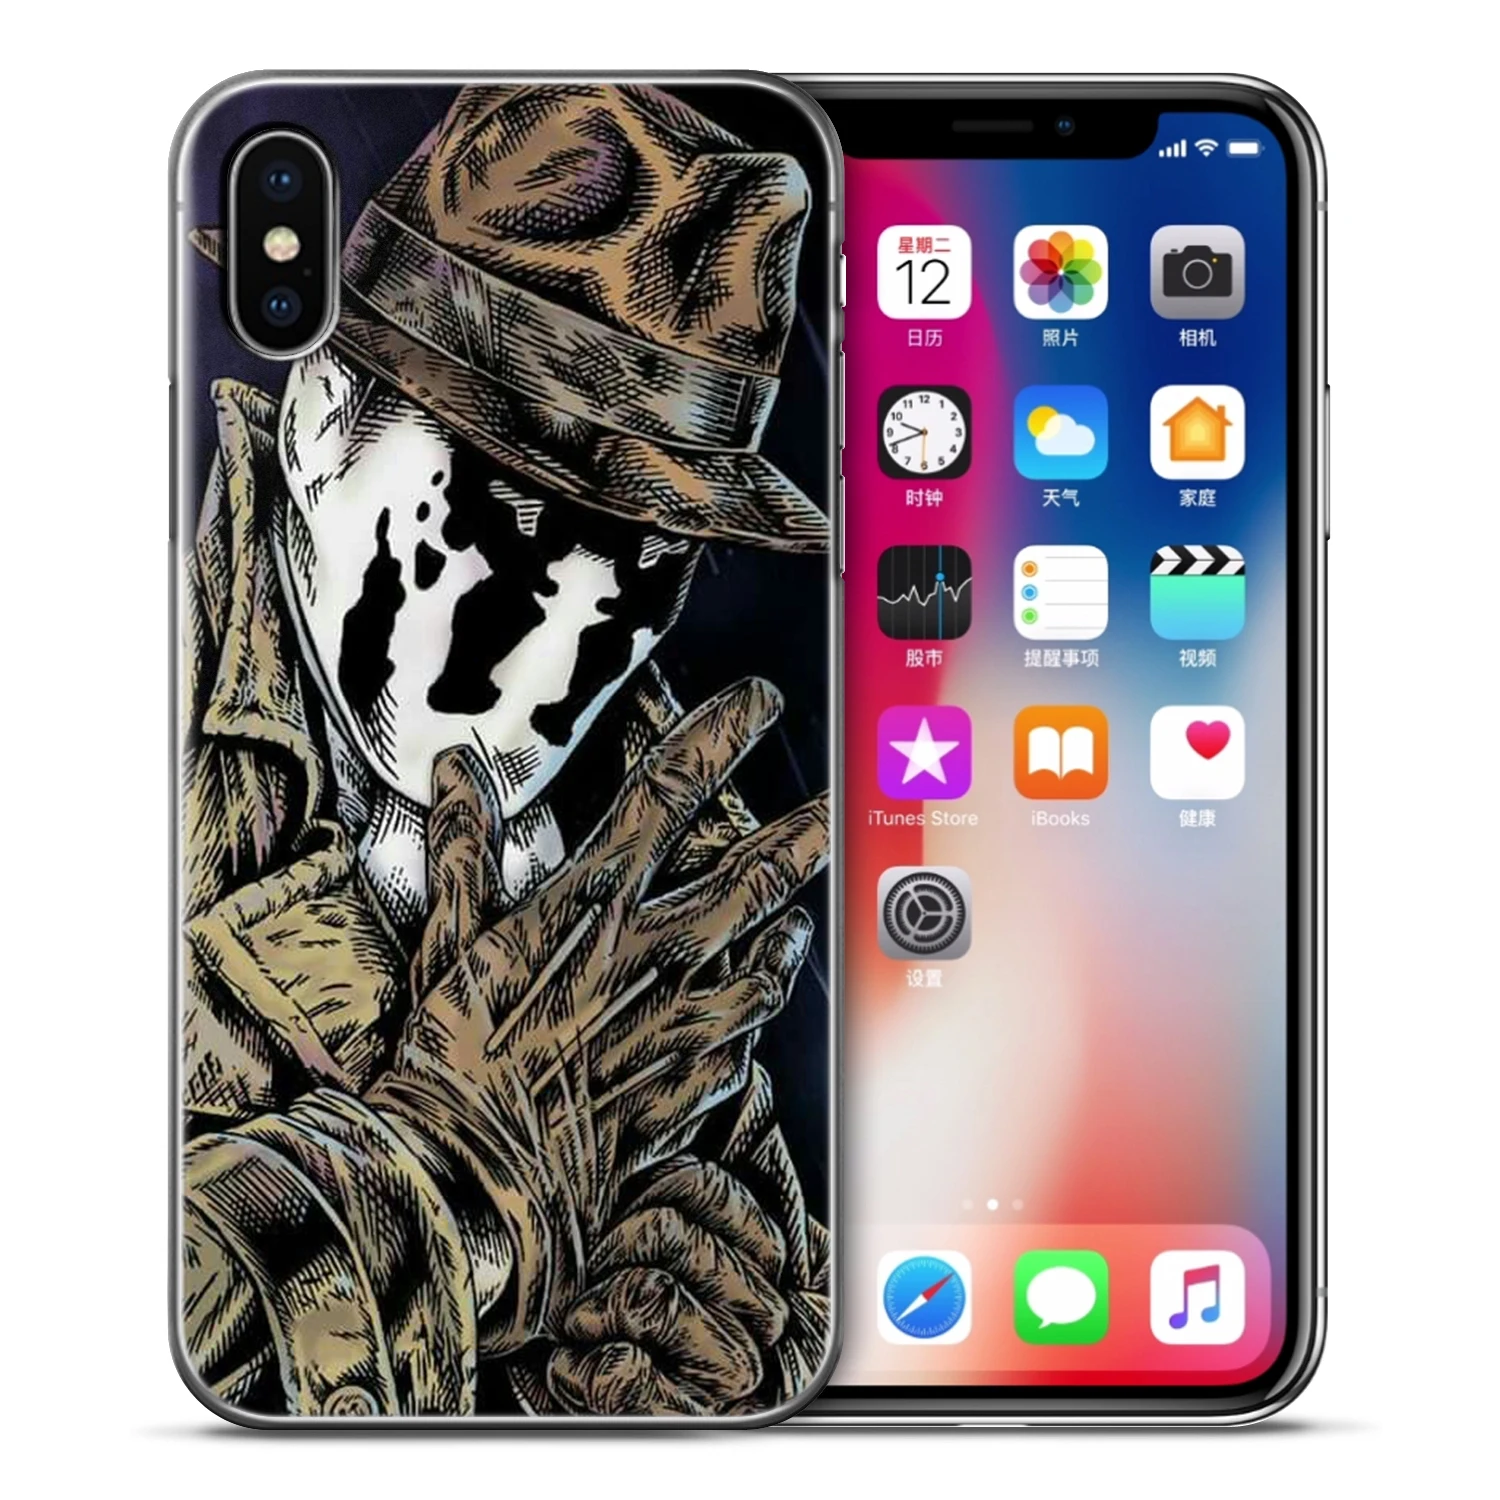 Venom Joker чехол s для iPhone 5 S SE X чехол для телефона Мягкий ТПУ силиконовый чехол для iPhone 6S 6 7 8 Plus XS Max XR чехол матовый Fundas